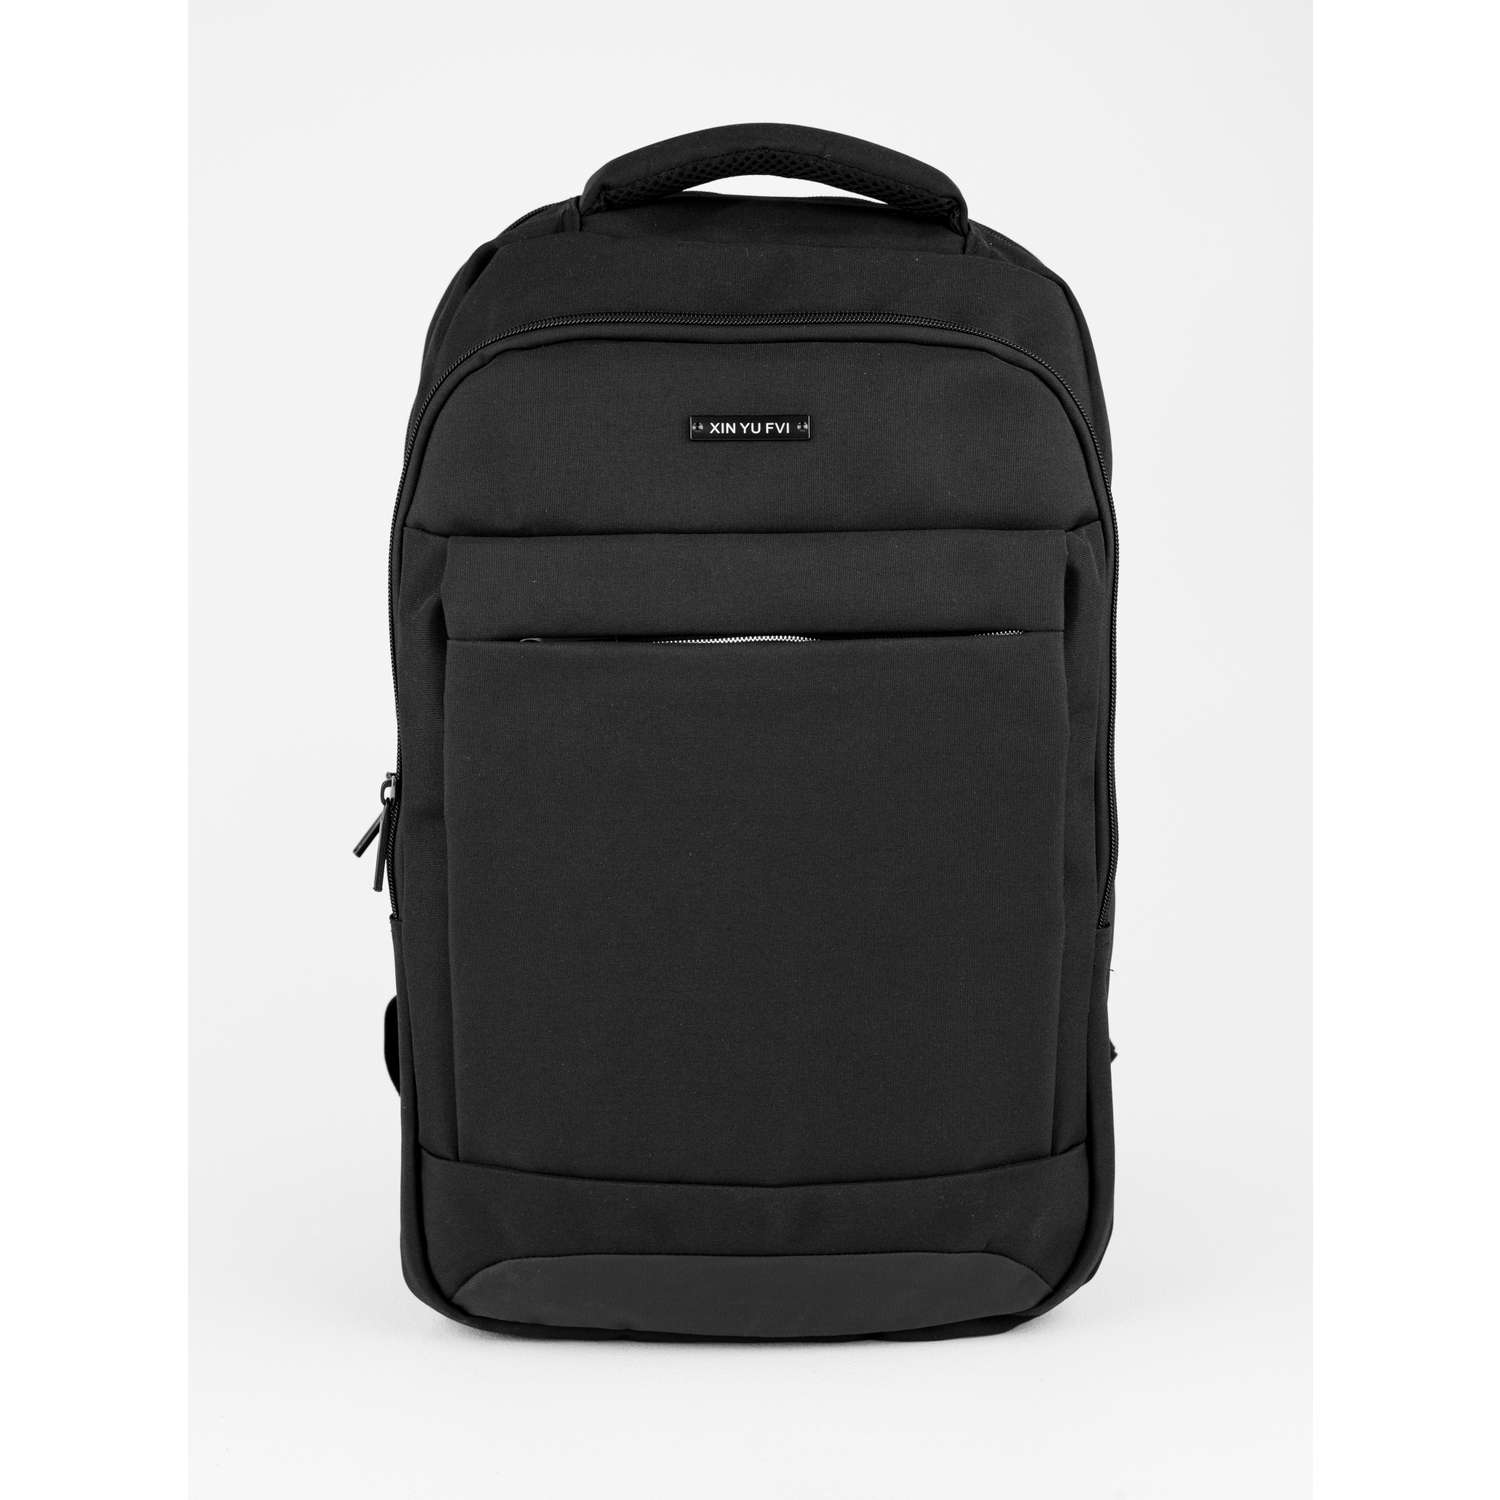 Рюкзак черный DUOYANG школьный подростковый для учебы и спорта - фото 1